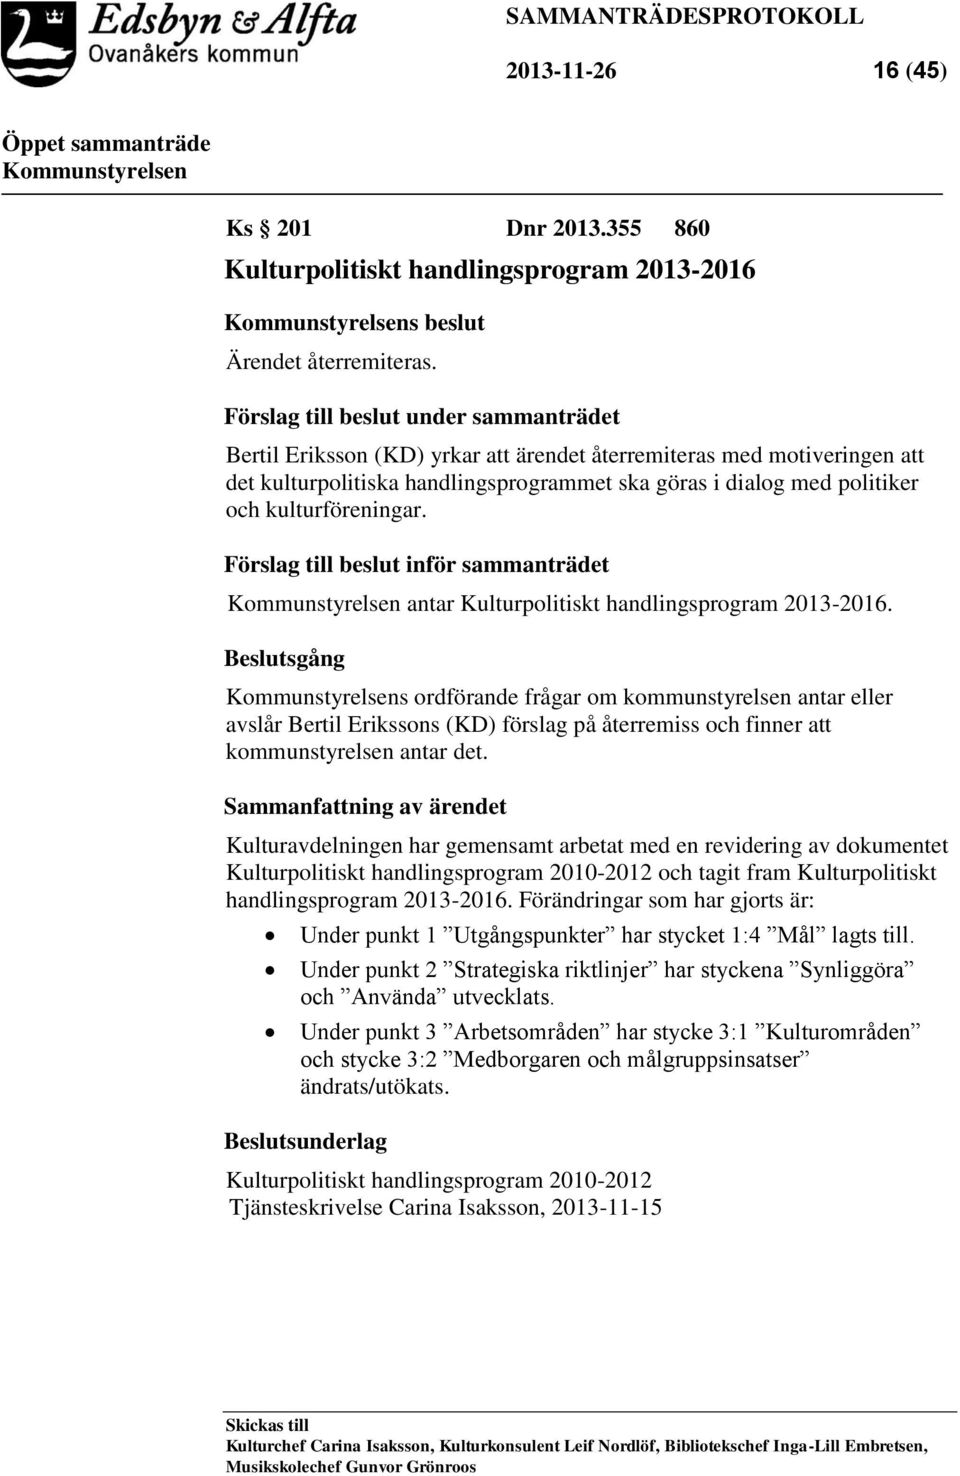 kulturföreningar. Förslag till beslut inför sammanträdet antar Kulturpolitiskt handlingsprogram 2013-2016.